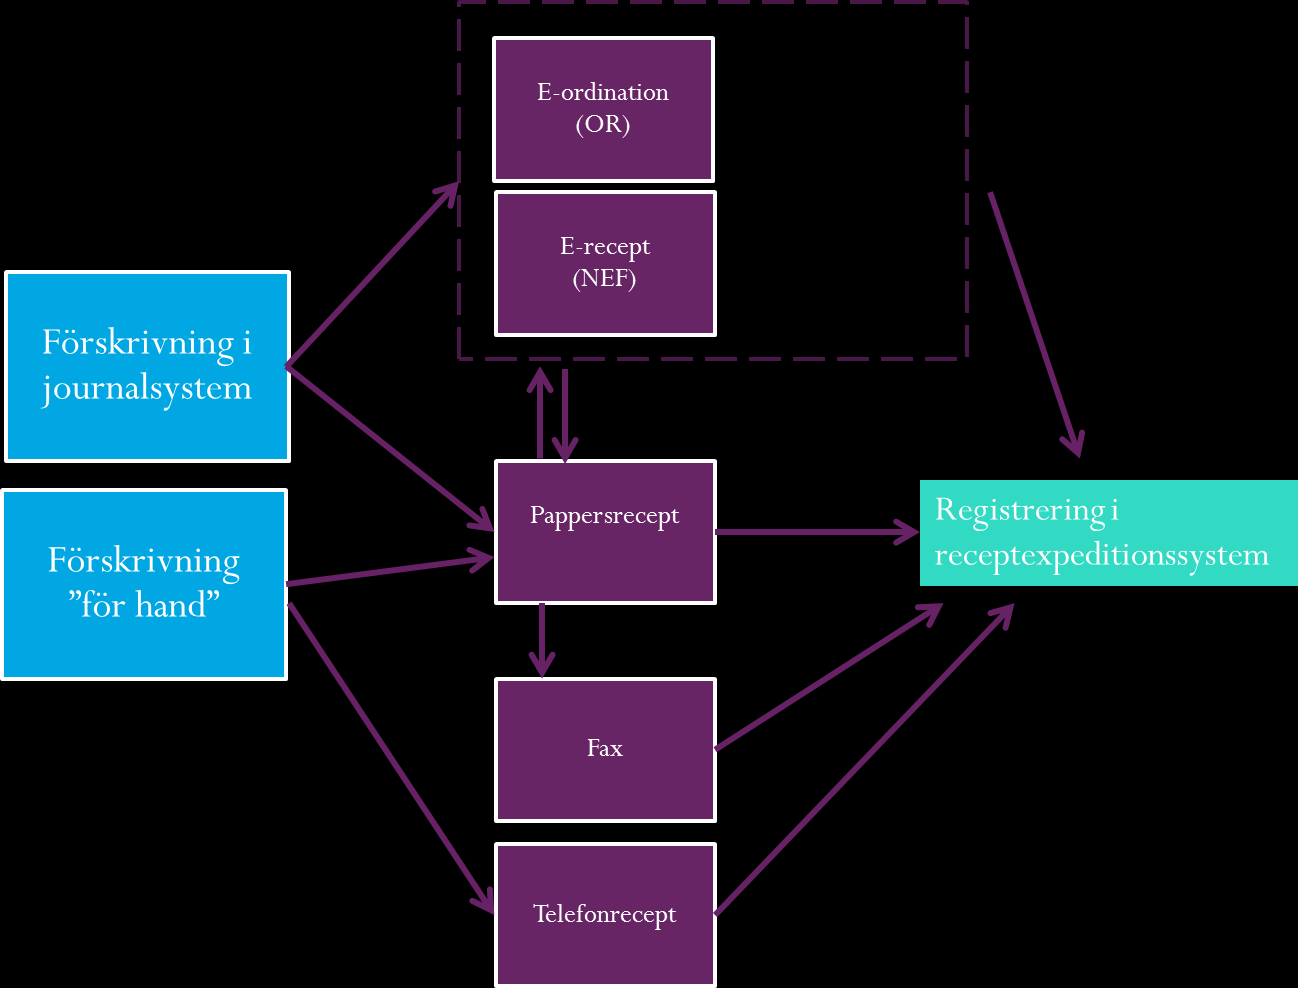 Bild 1. Överföring av förskrivningsinformation till receptexpeditionssystem kan ske via olika format. Ibland överförs även information mellan format.